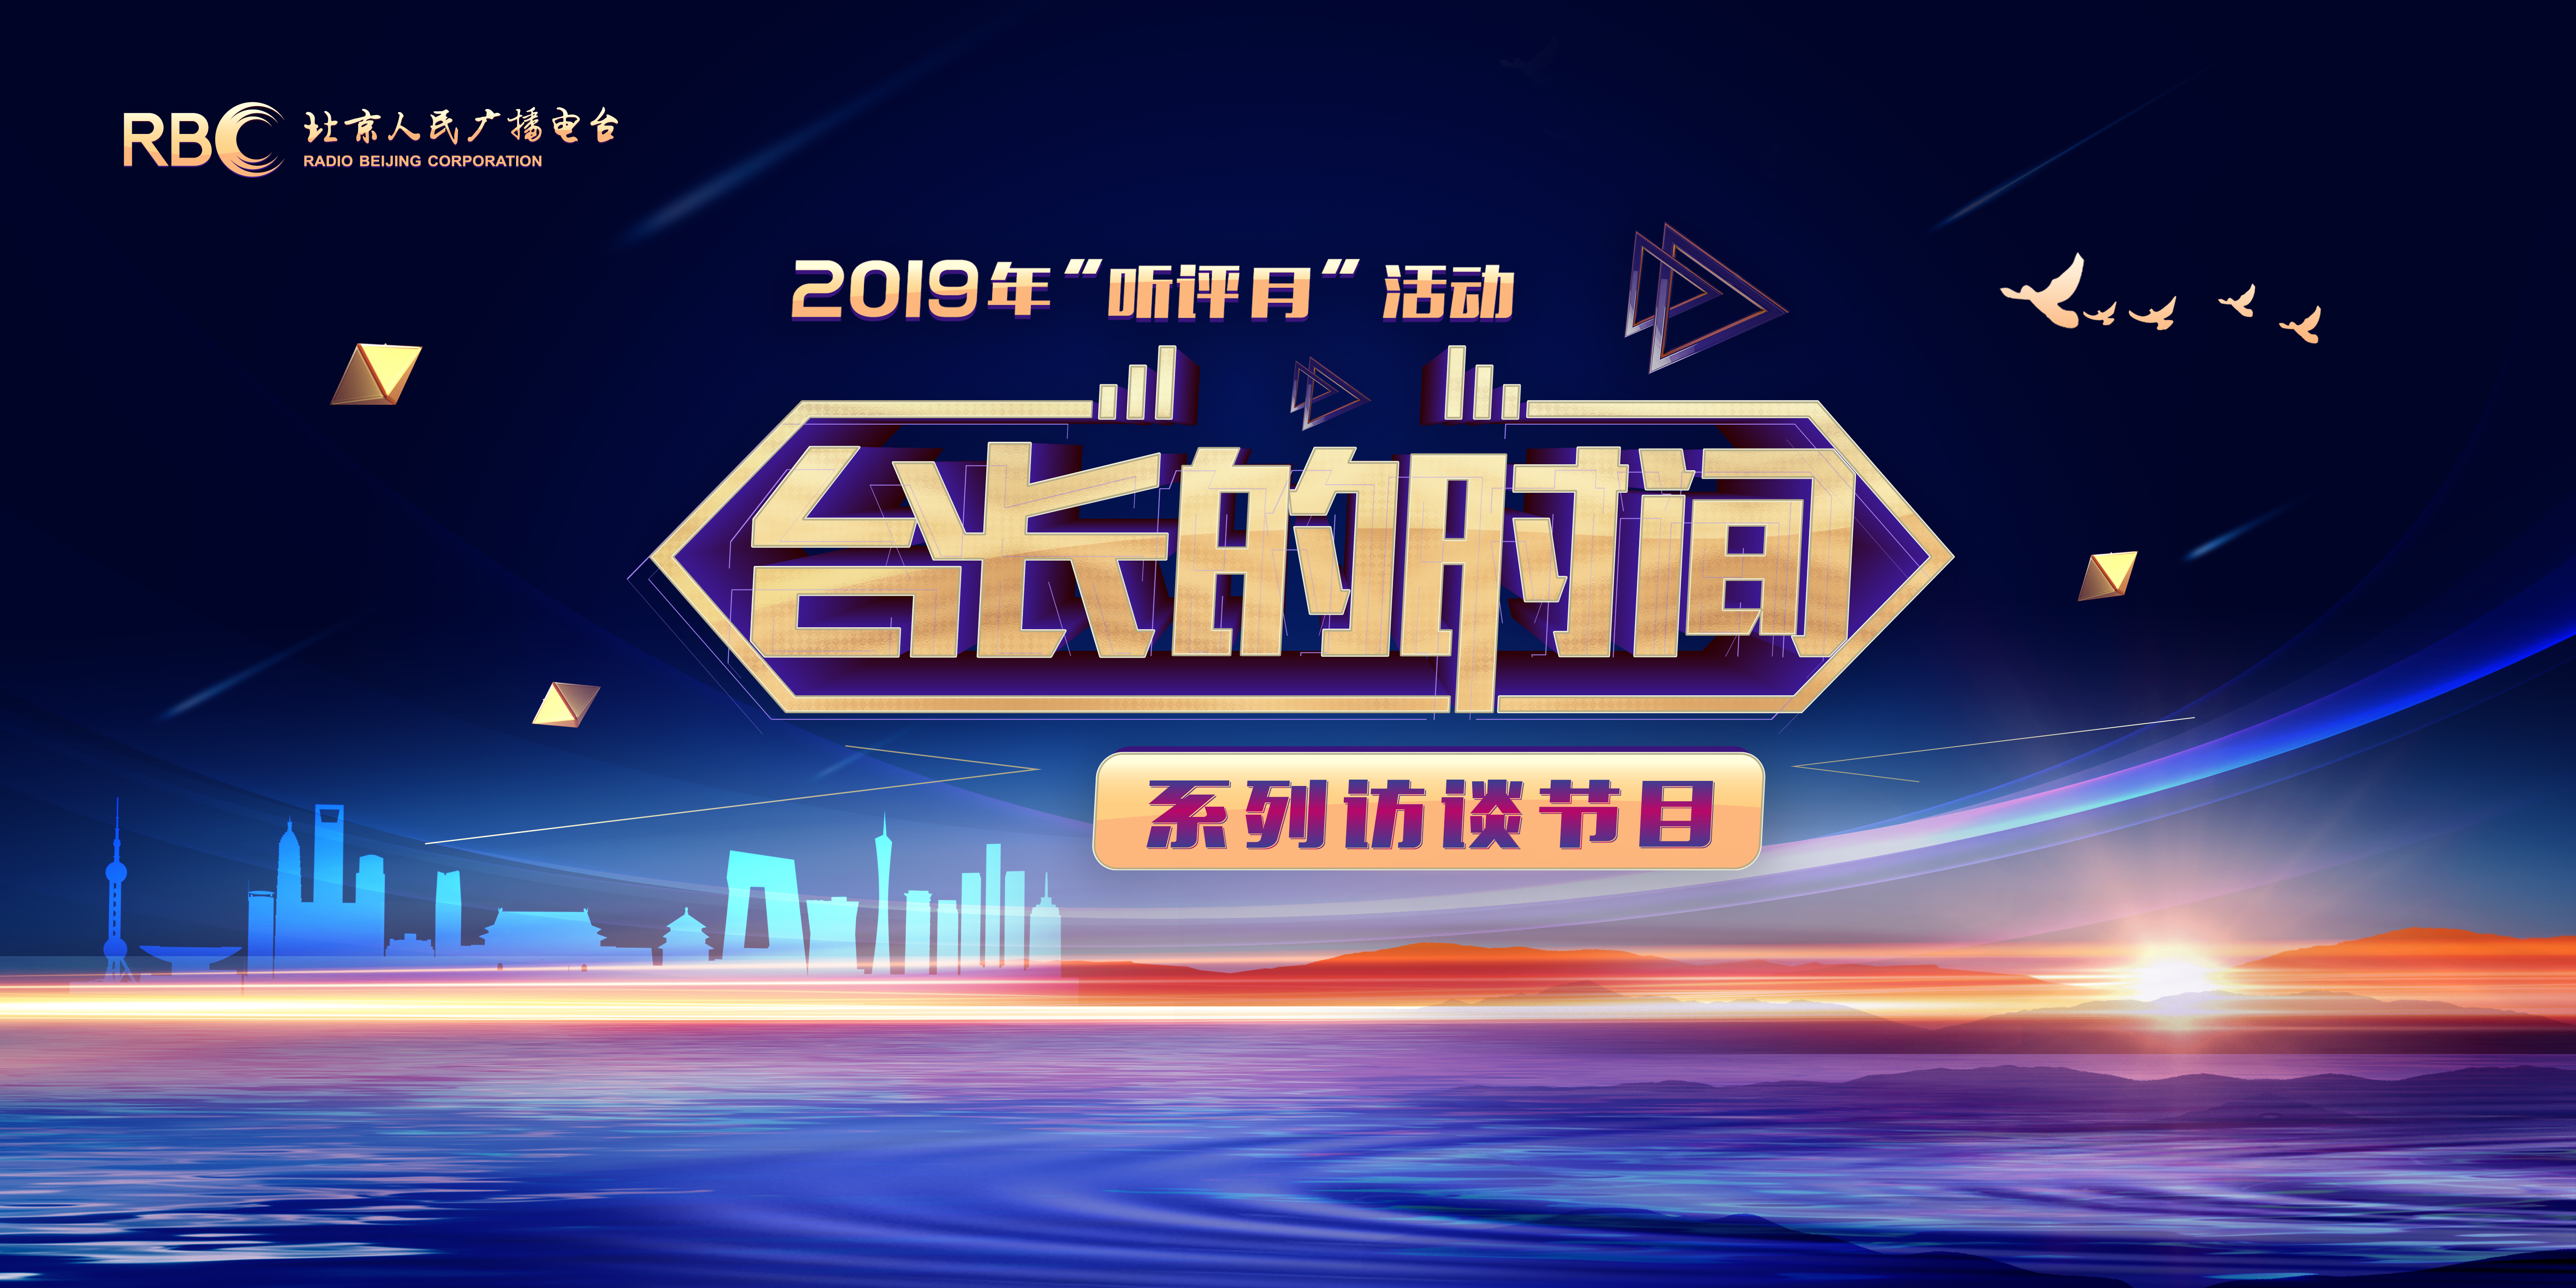 北京电台2019年“听评月”活动“台长的时间”系列访谈节目